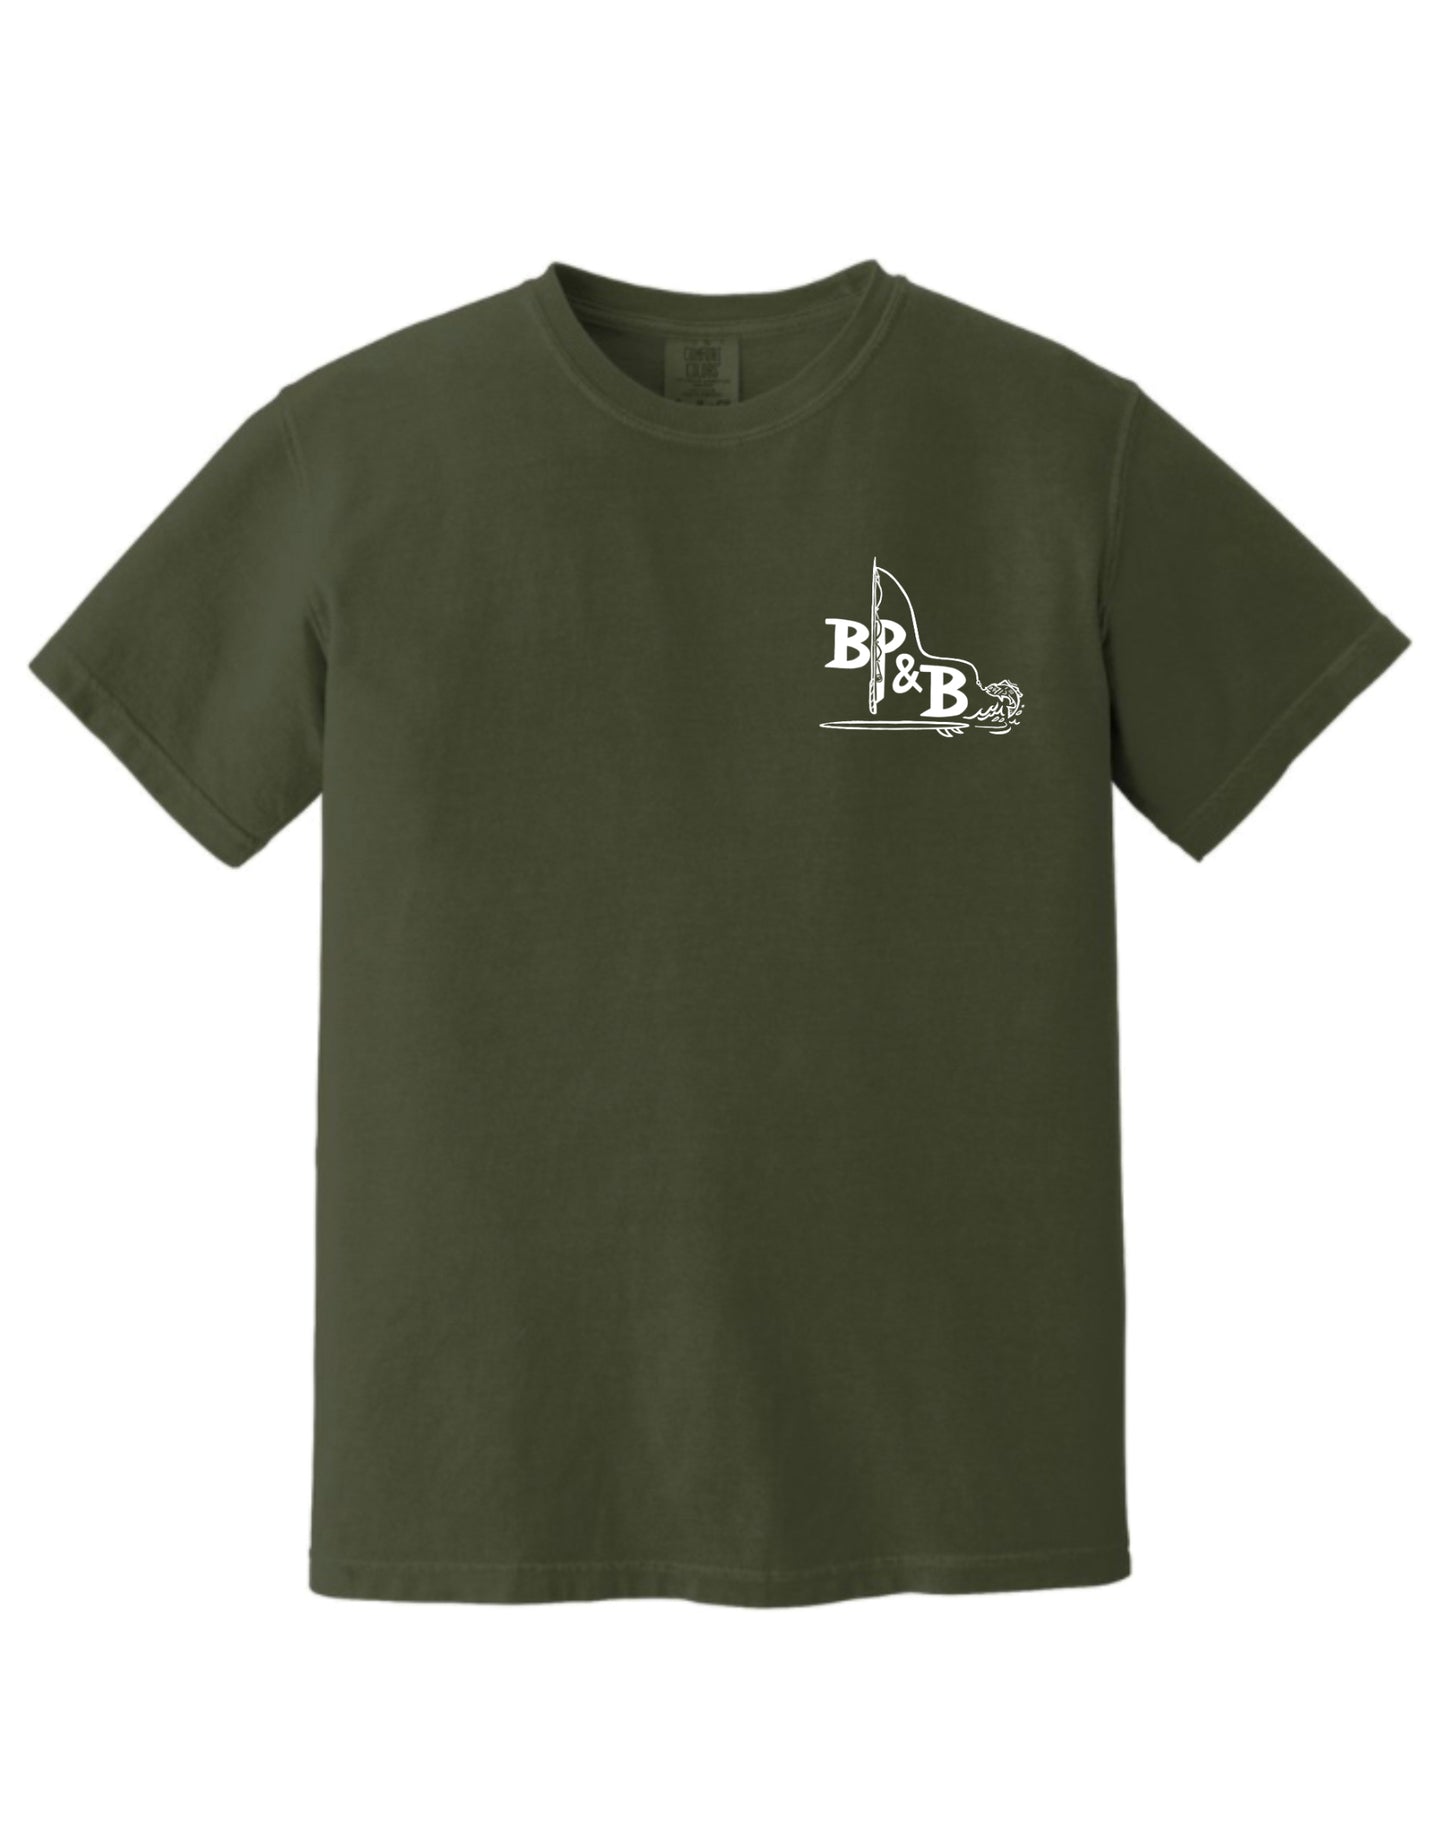 The Deer Wrangler T-Shirt